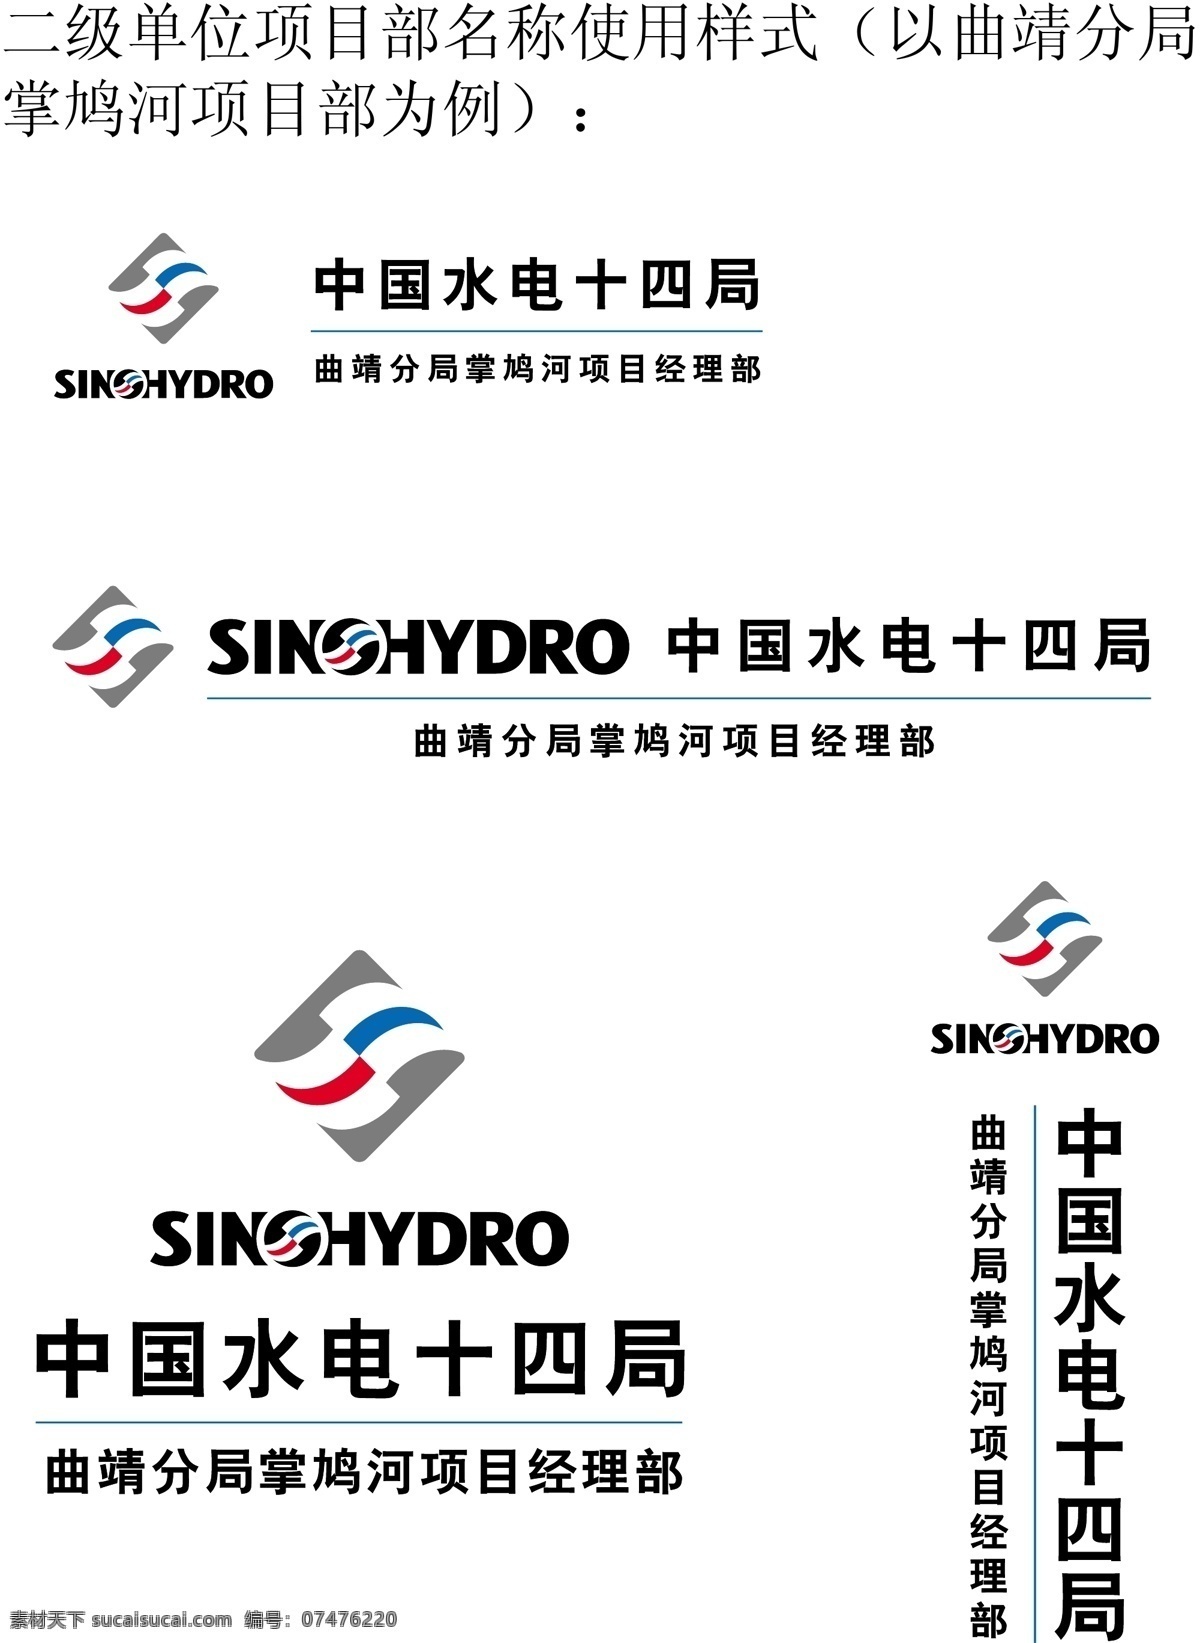 中国 水电 vi 全套 标识标志图标 矢量图库 中国水电 建筑家居